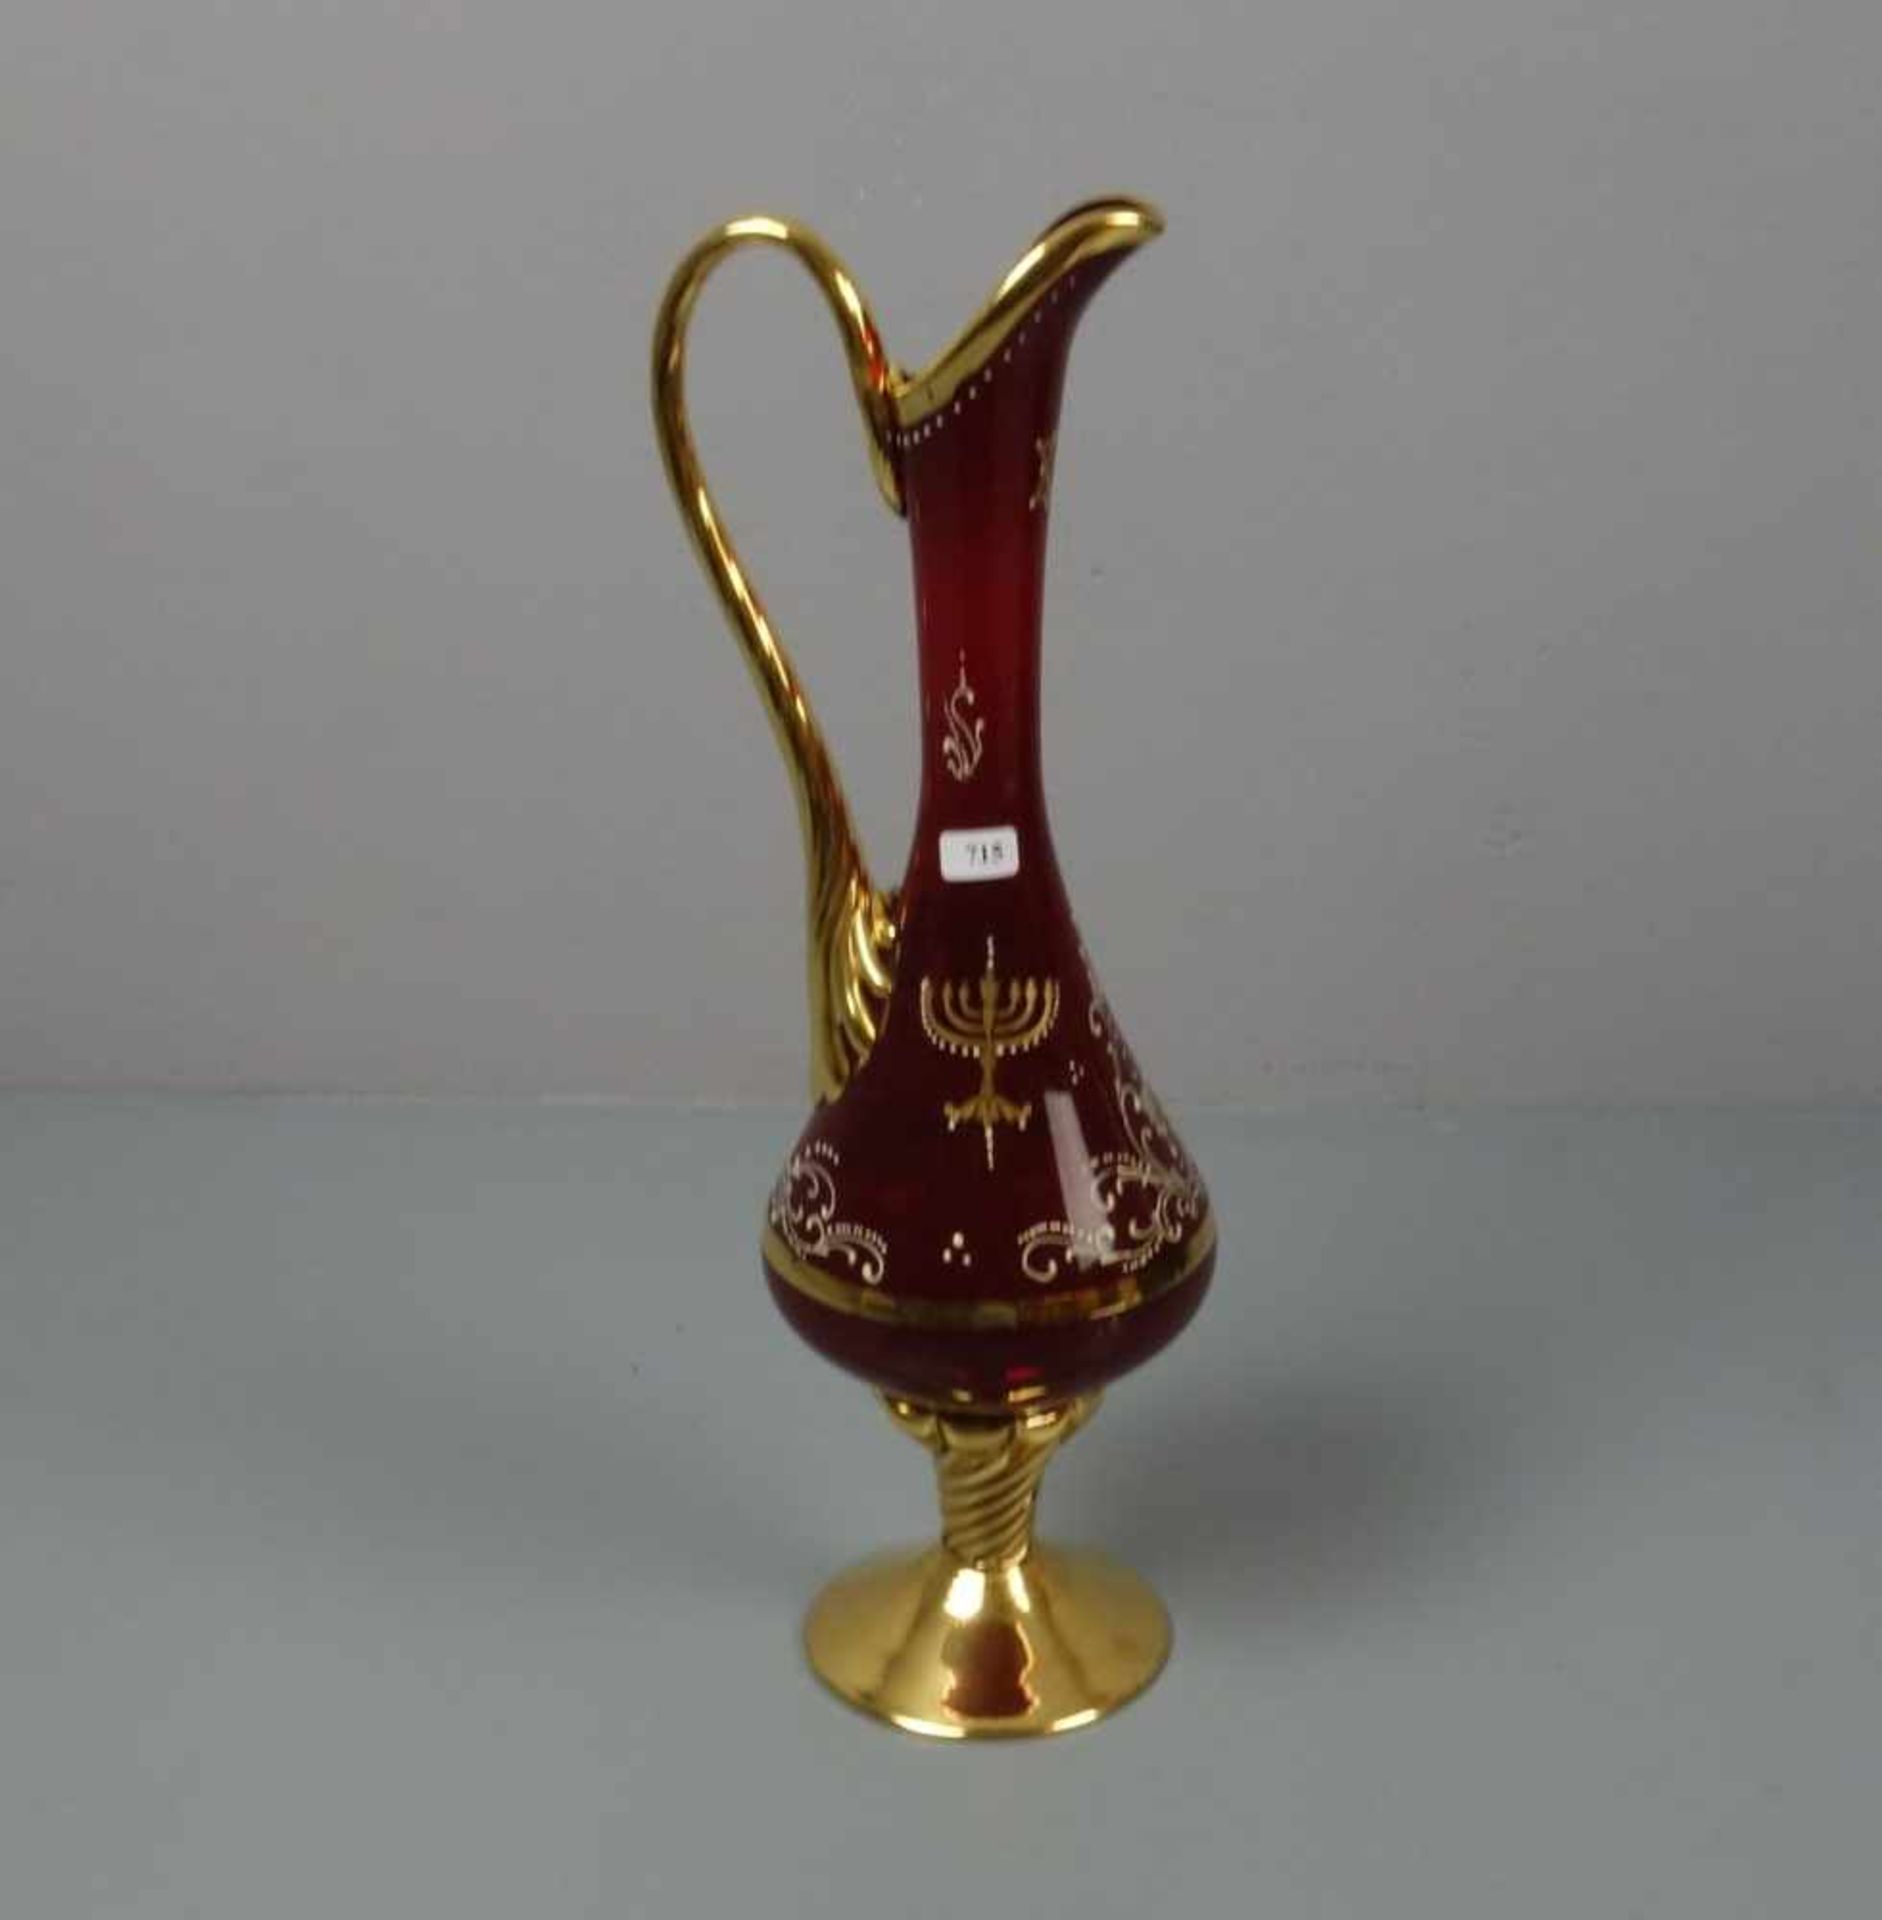 KARAFFE MIT JÜDISCHER SYMBOLIK, farbloses, rubiniertes und partiell goldfarben gefasstes Glas mit